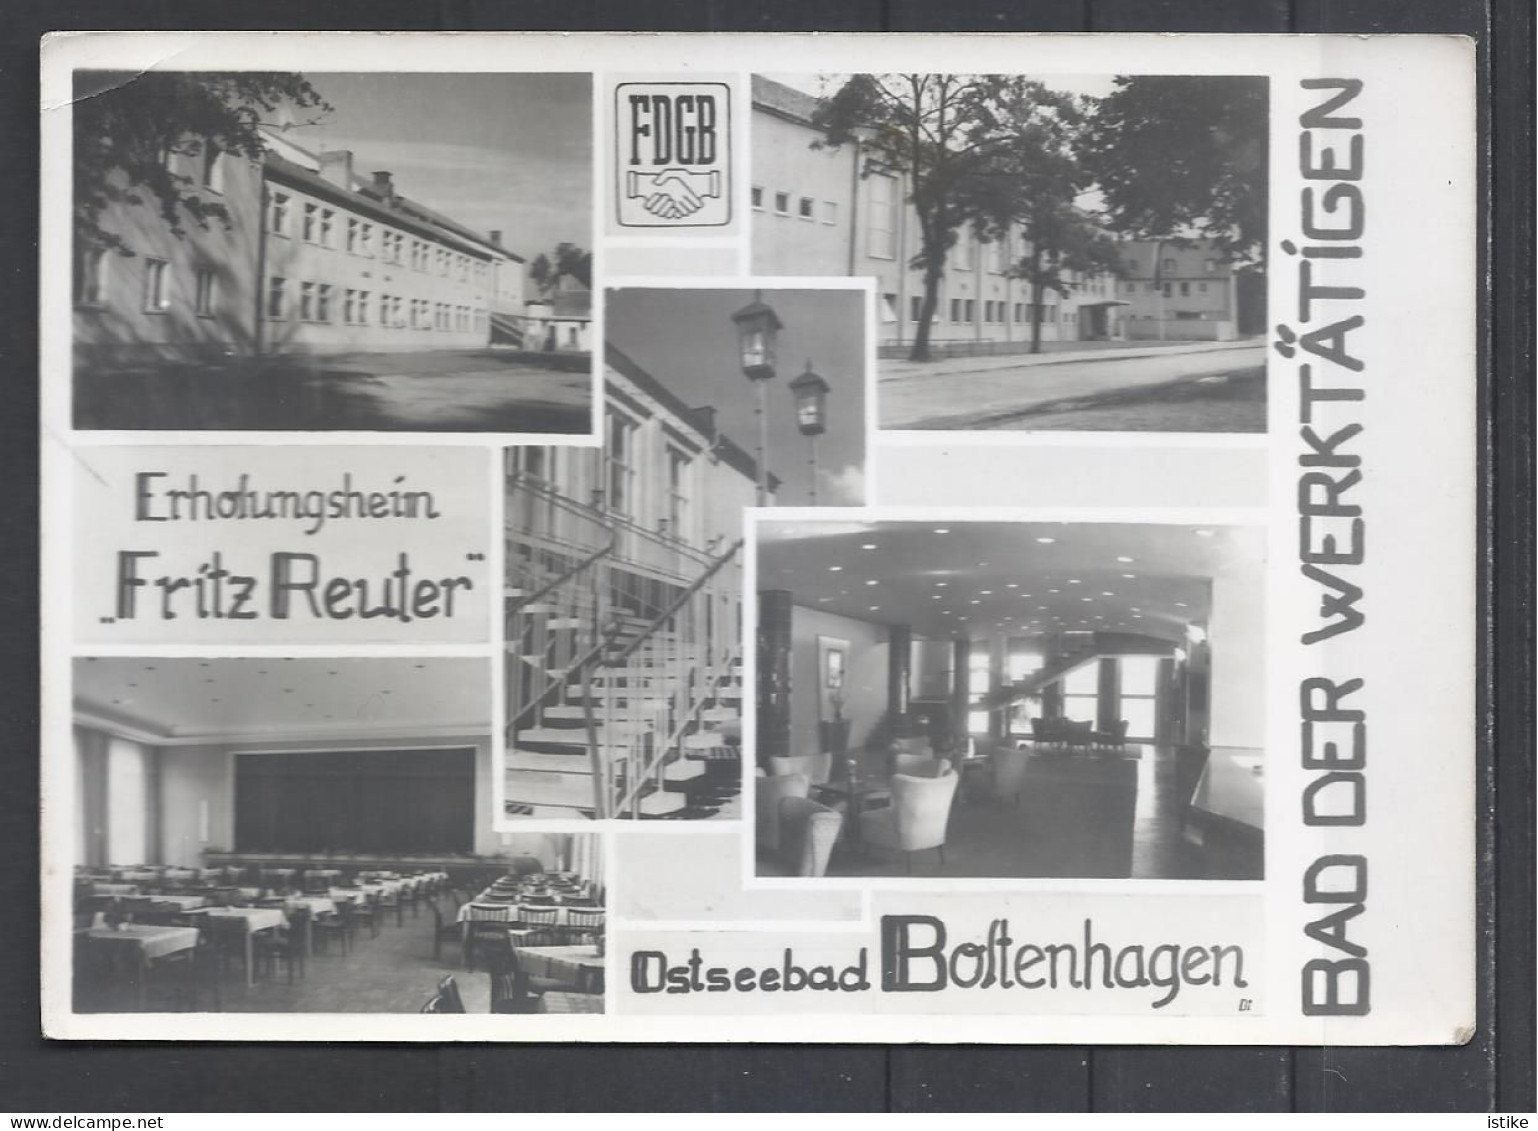 Germany, Boltennagen, Erholungsheim "Frtz Reuter" Resthouse, Sp, Hand Cancellation, 1963. - Boltenhagen